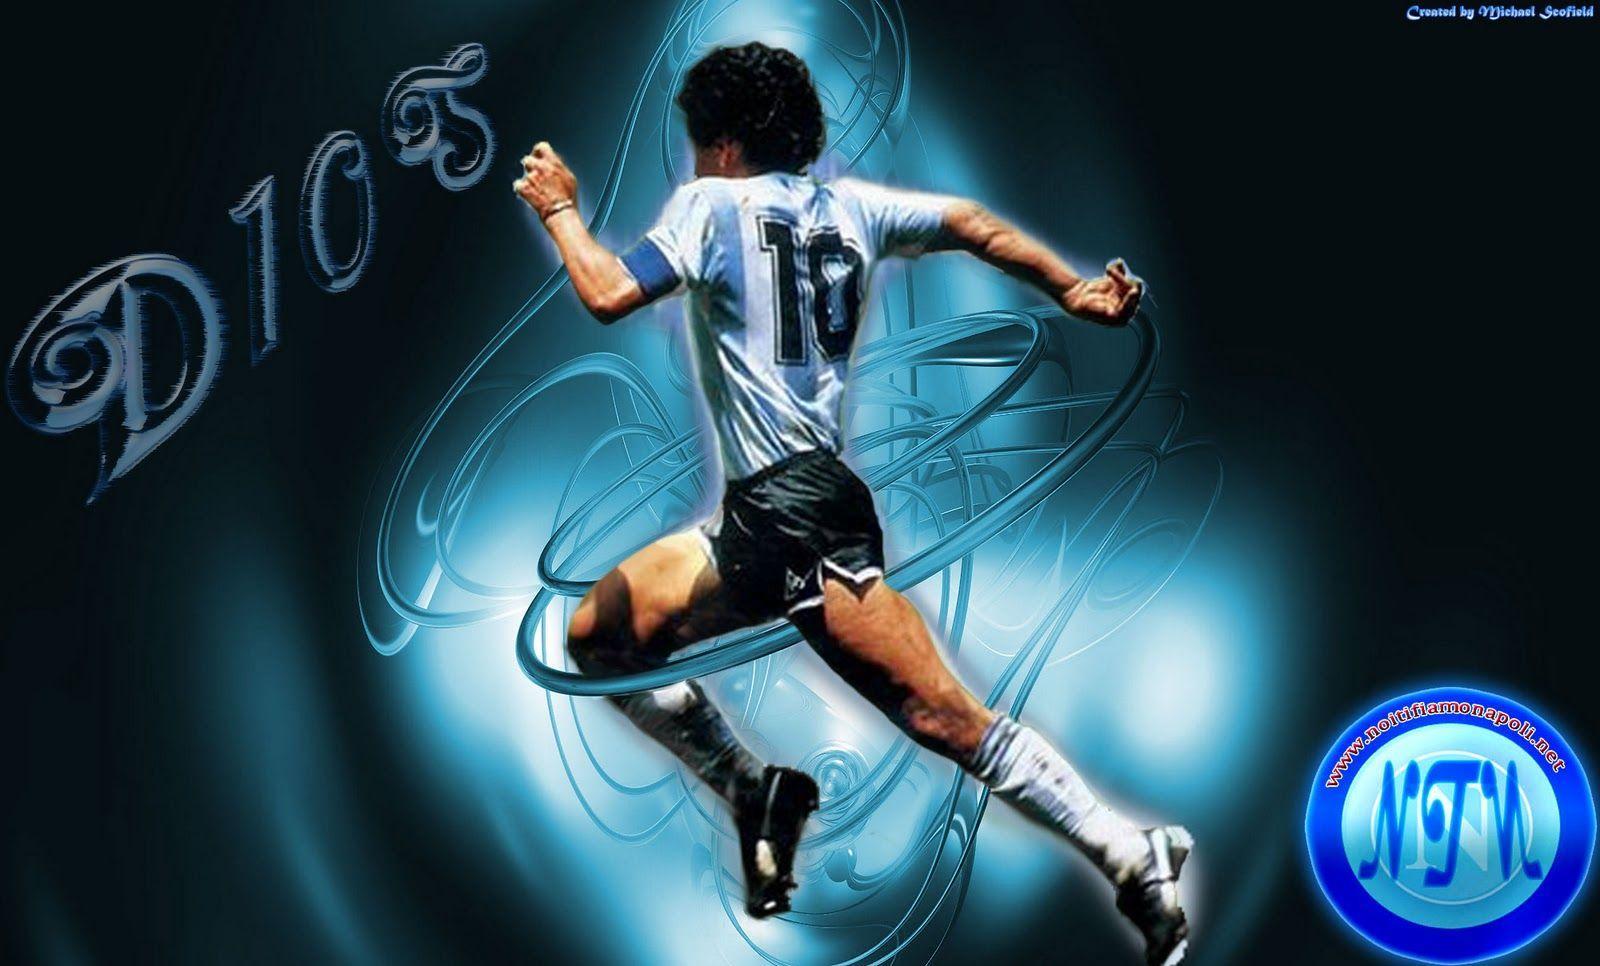 Wallpaper Diego Maradona HD 1024x768 #diego maradona